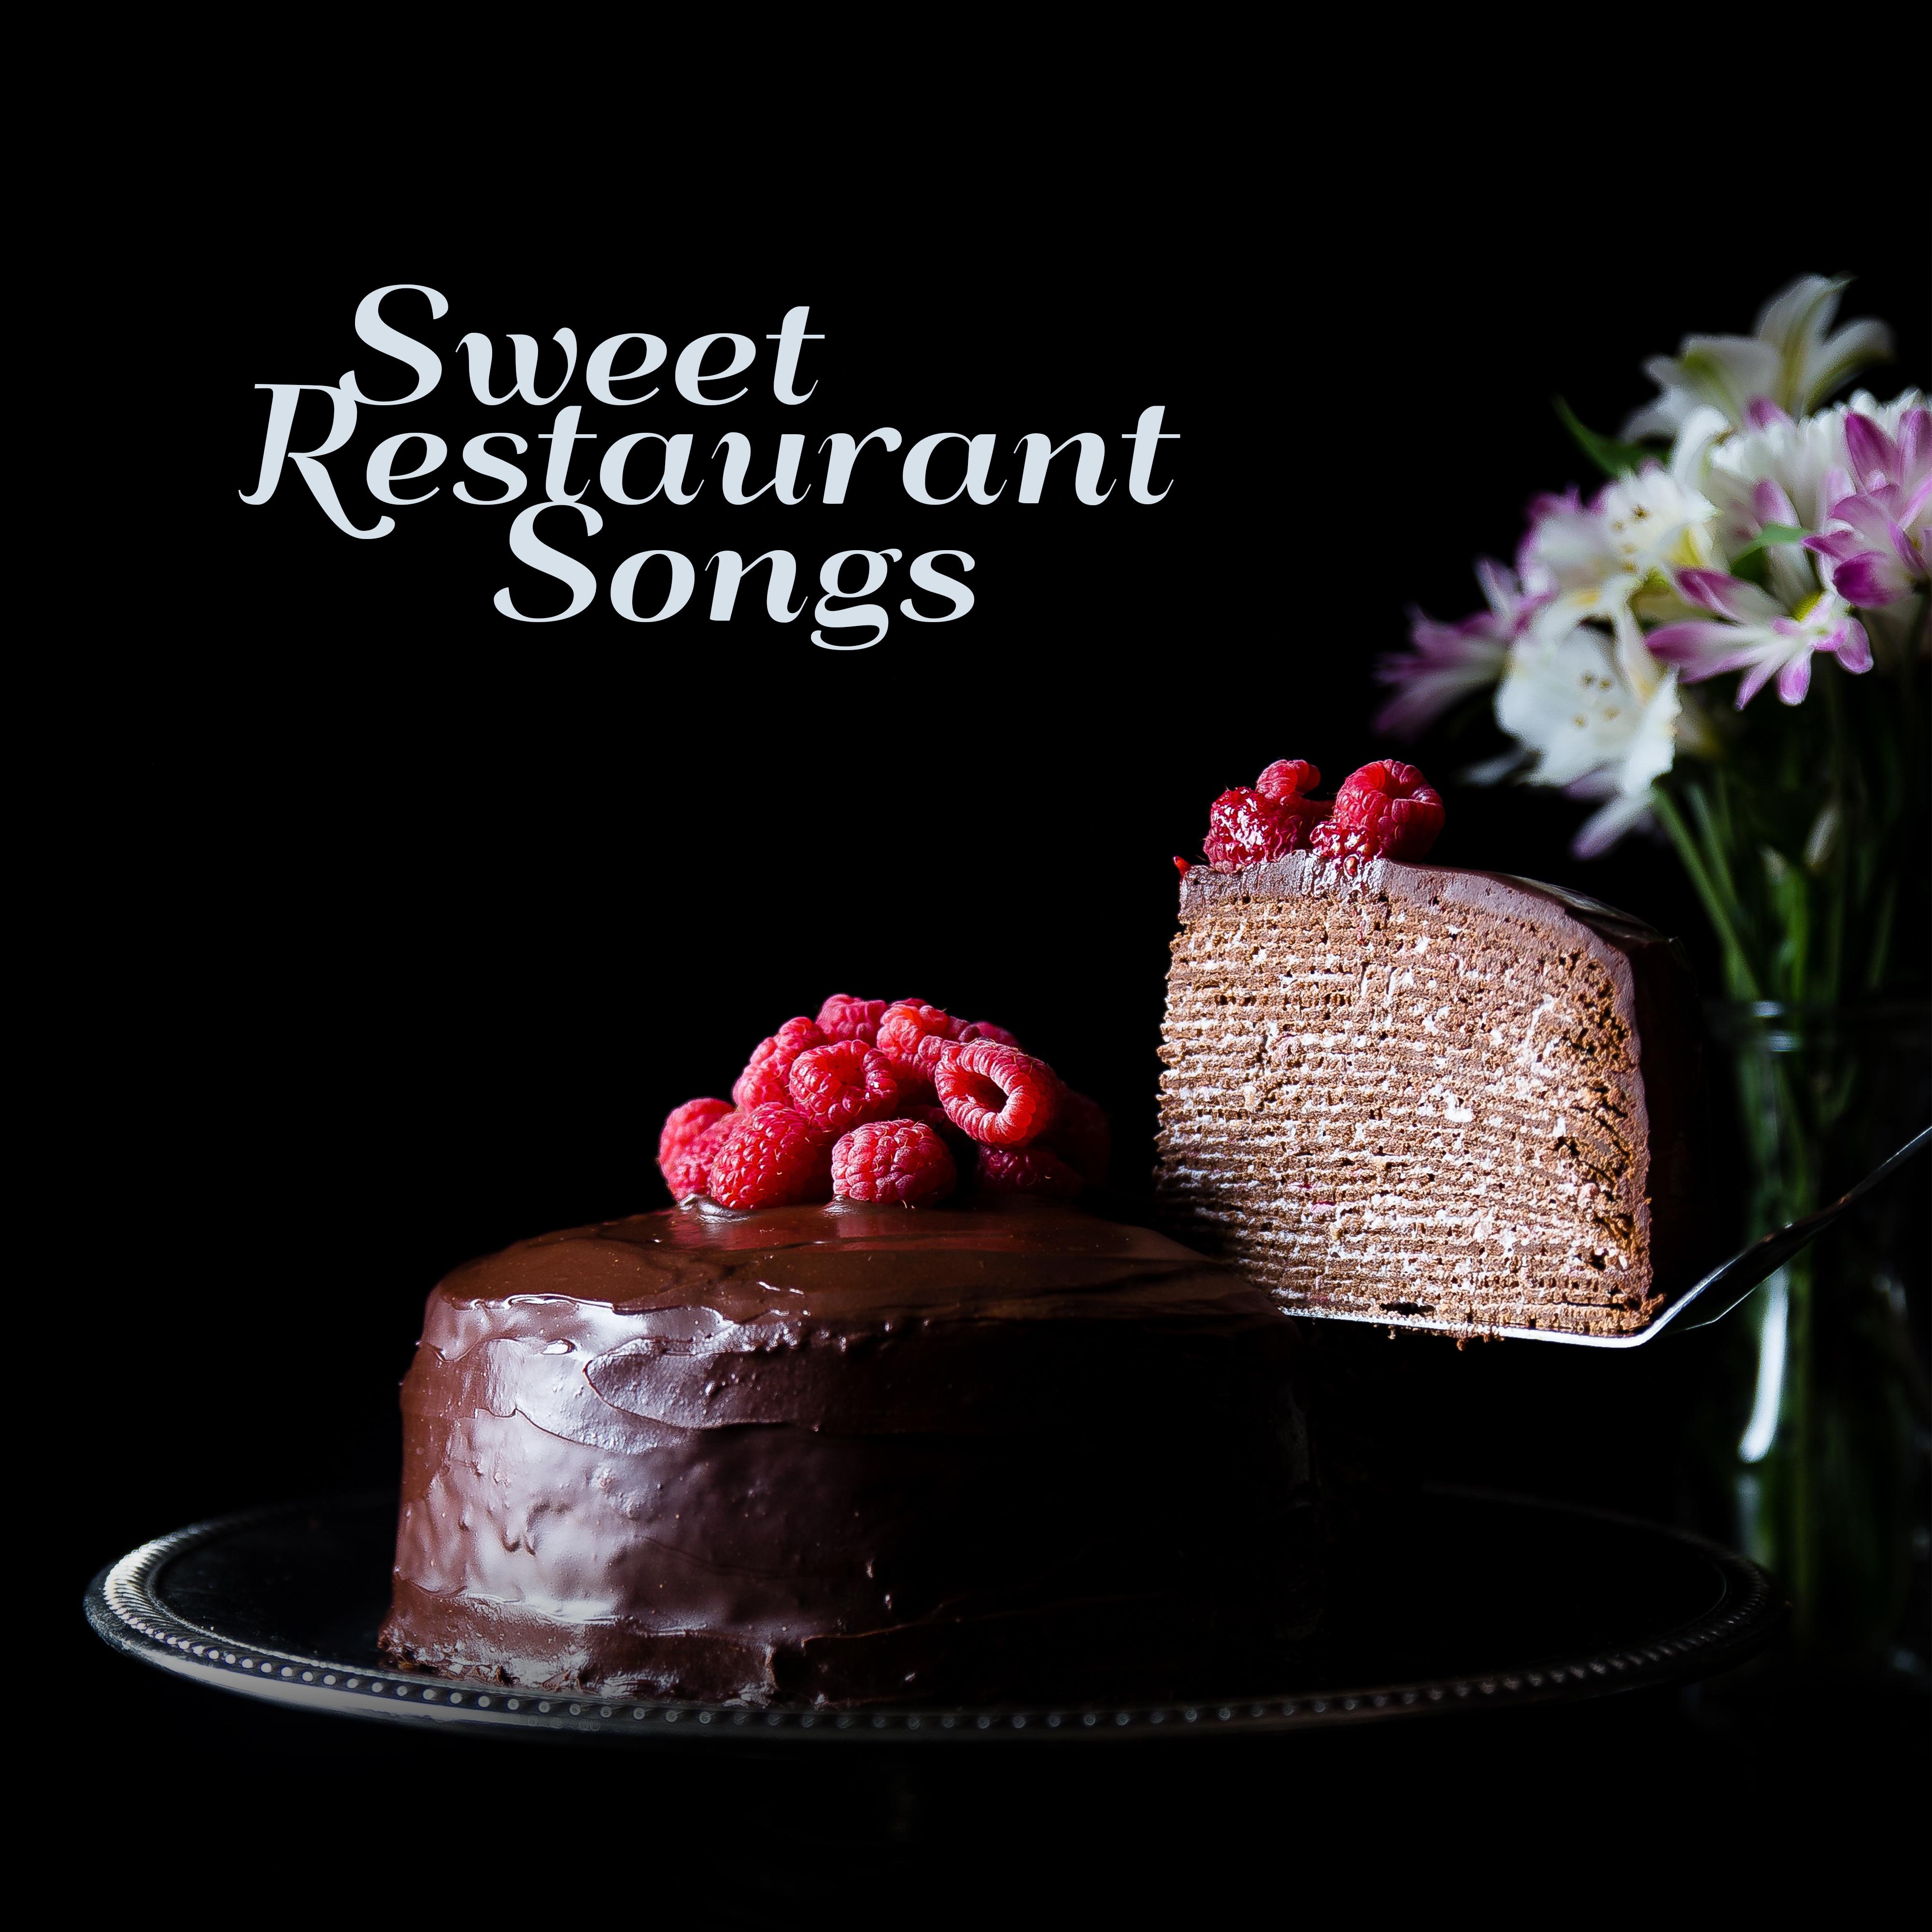 Sweet Restaurant Songs